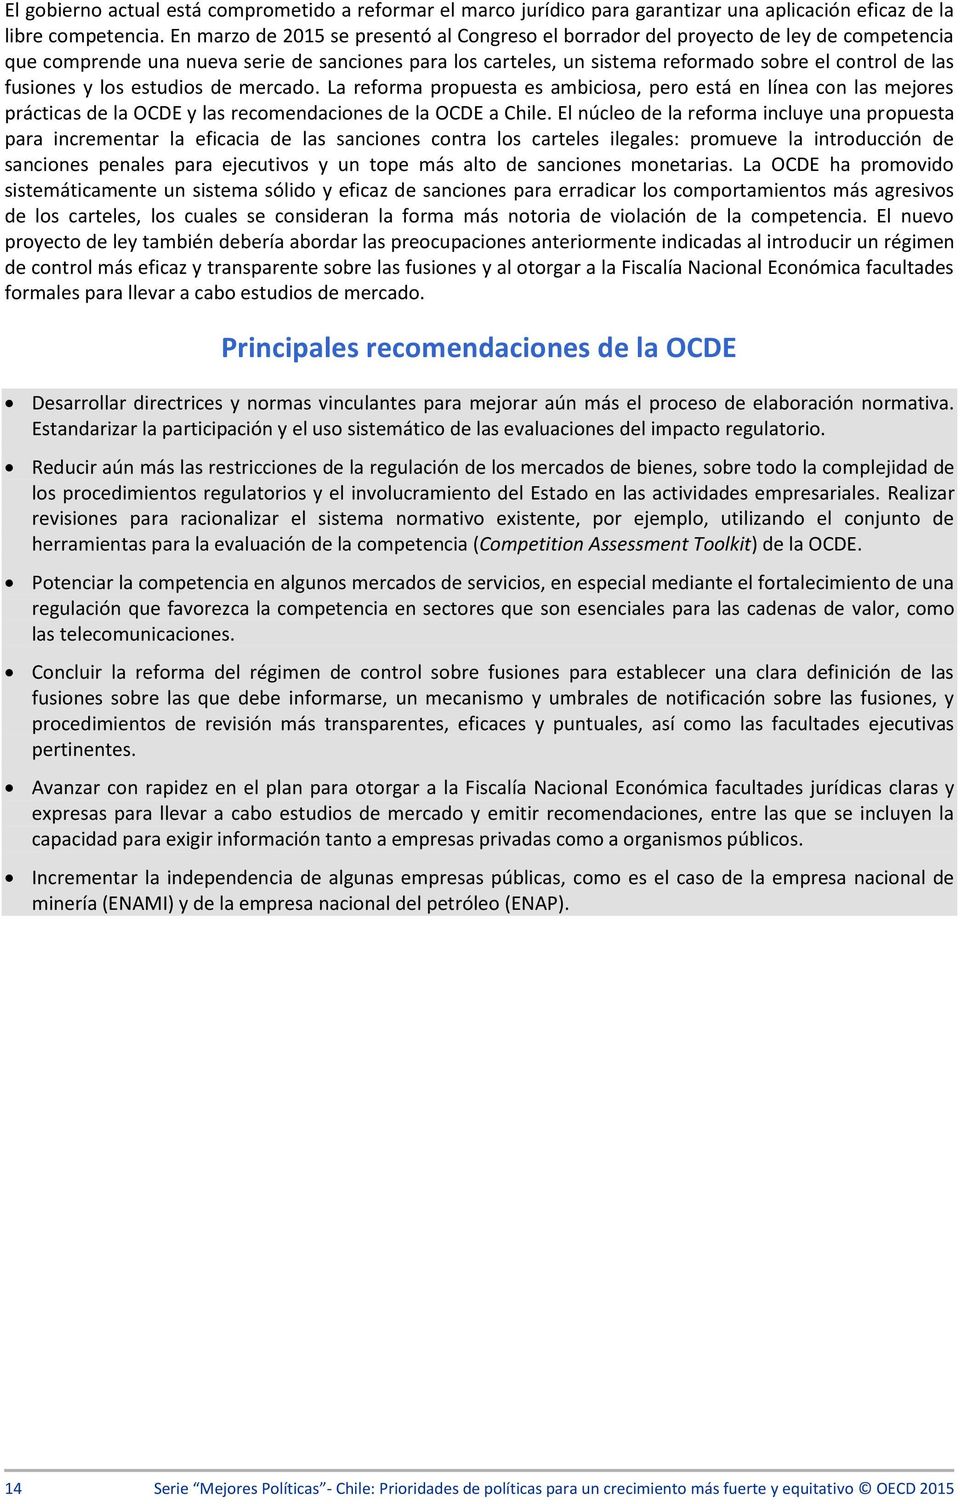 fusiones y los estudios de mercado. La reforma propuesta es ambiciosa, pero está en línea con las mejores prácticas de la OCDE y las recomendaciones de la OCDE a Chile.